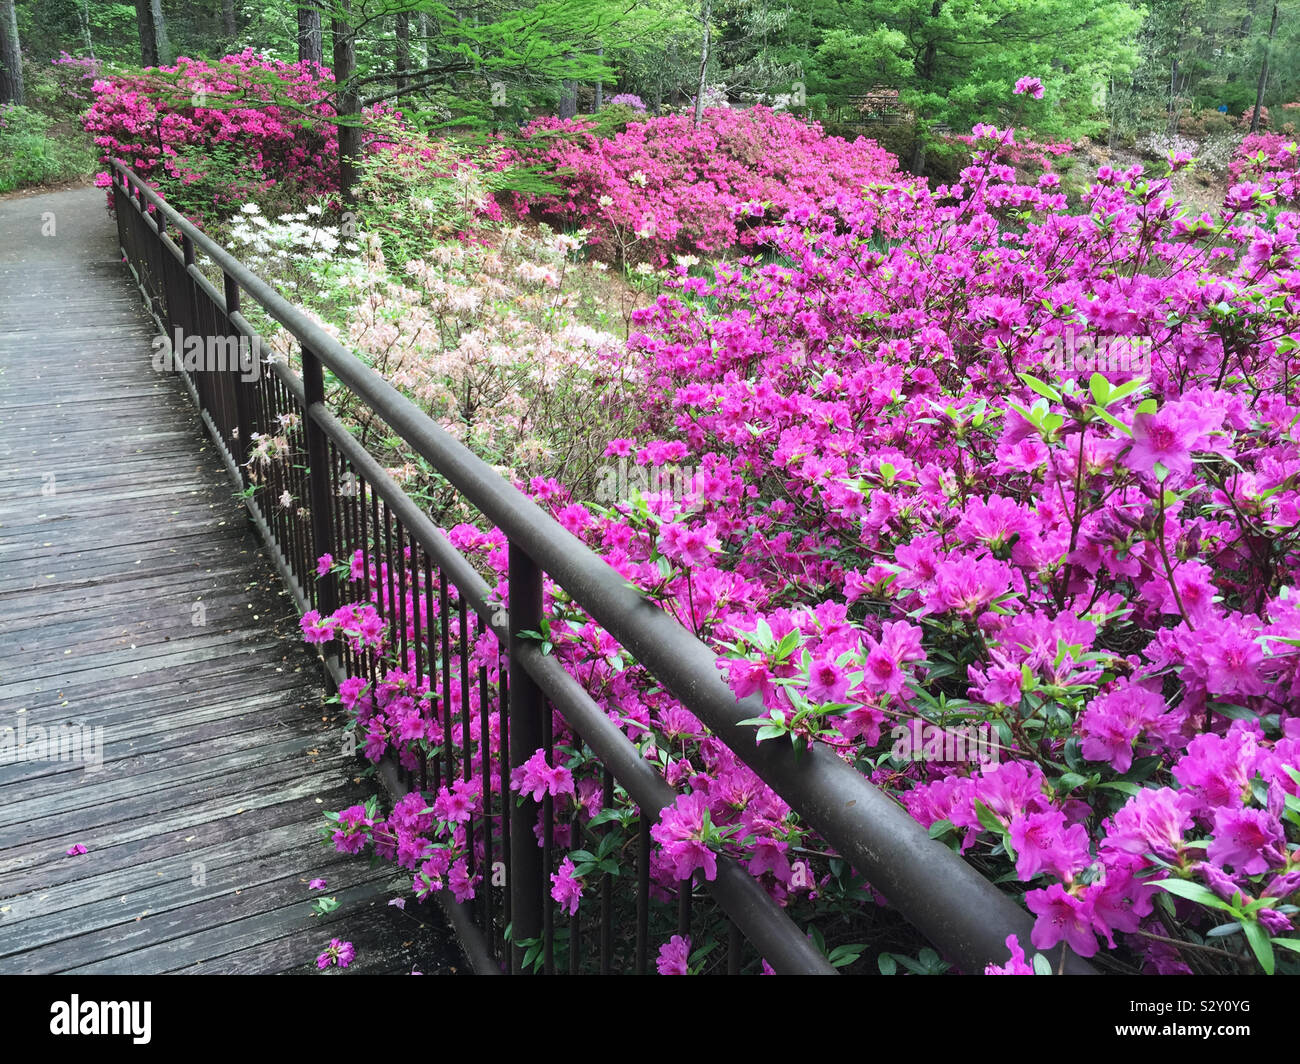 Landscaped garden filled with colorful azalea flowers in bloom growing alongside a wooden footbridge. Stock Photo